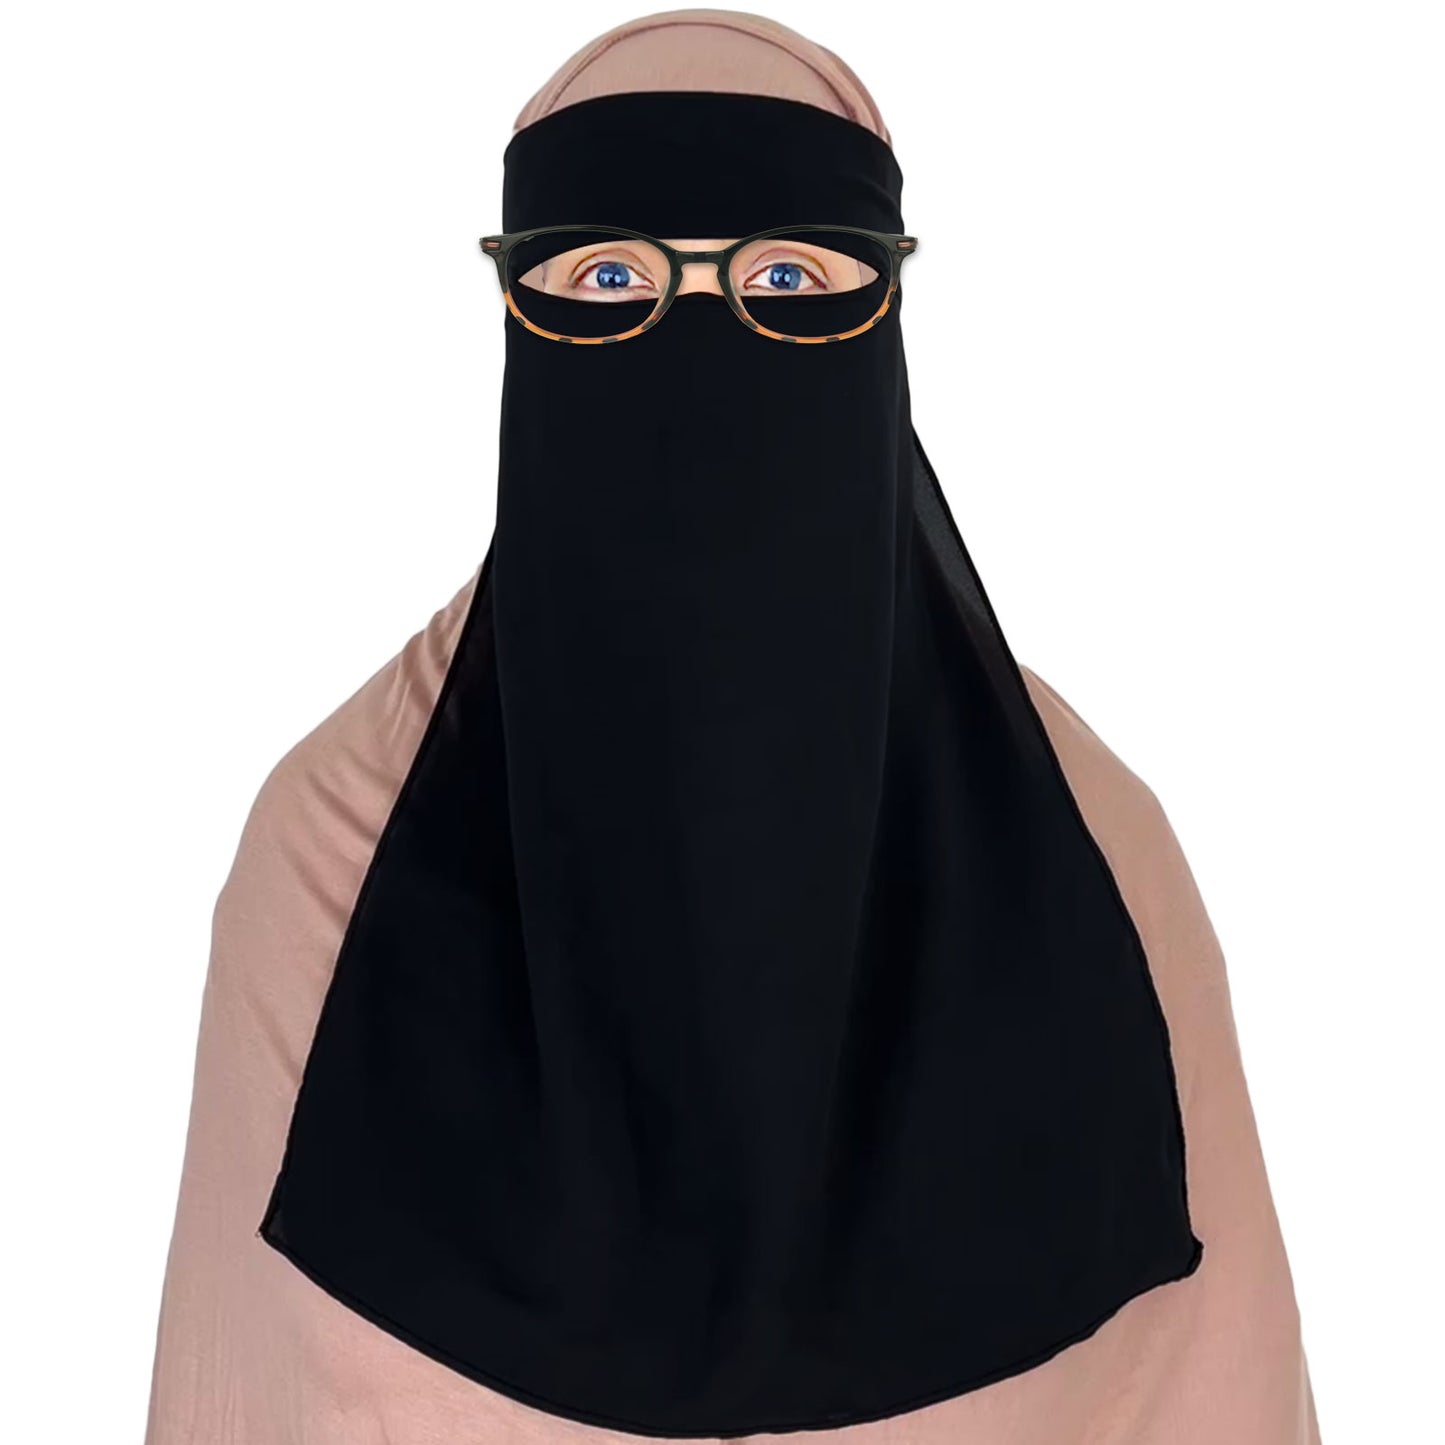 single layer chiffon black niqab